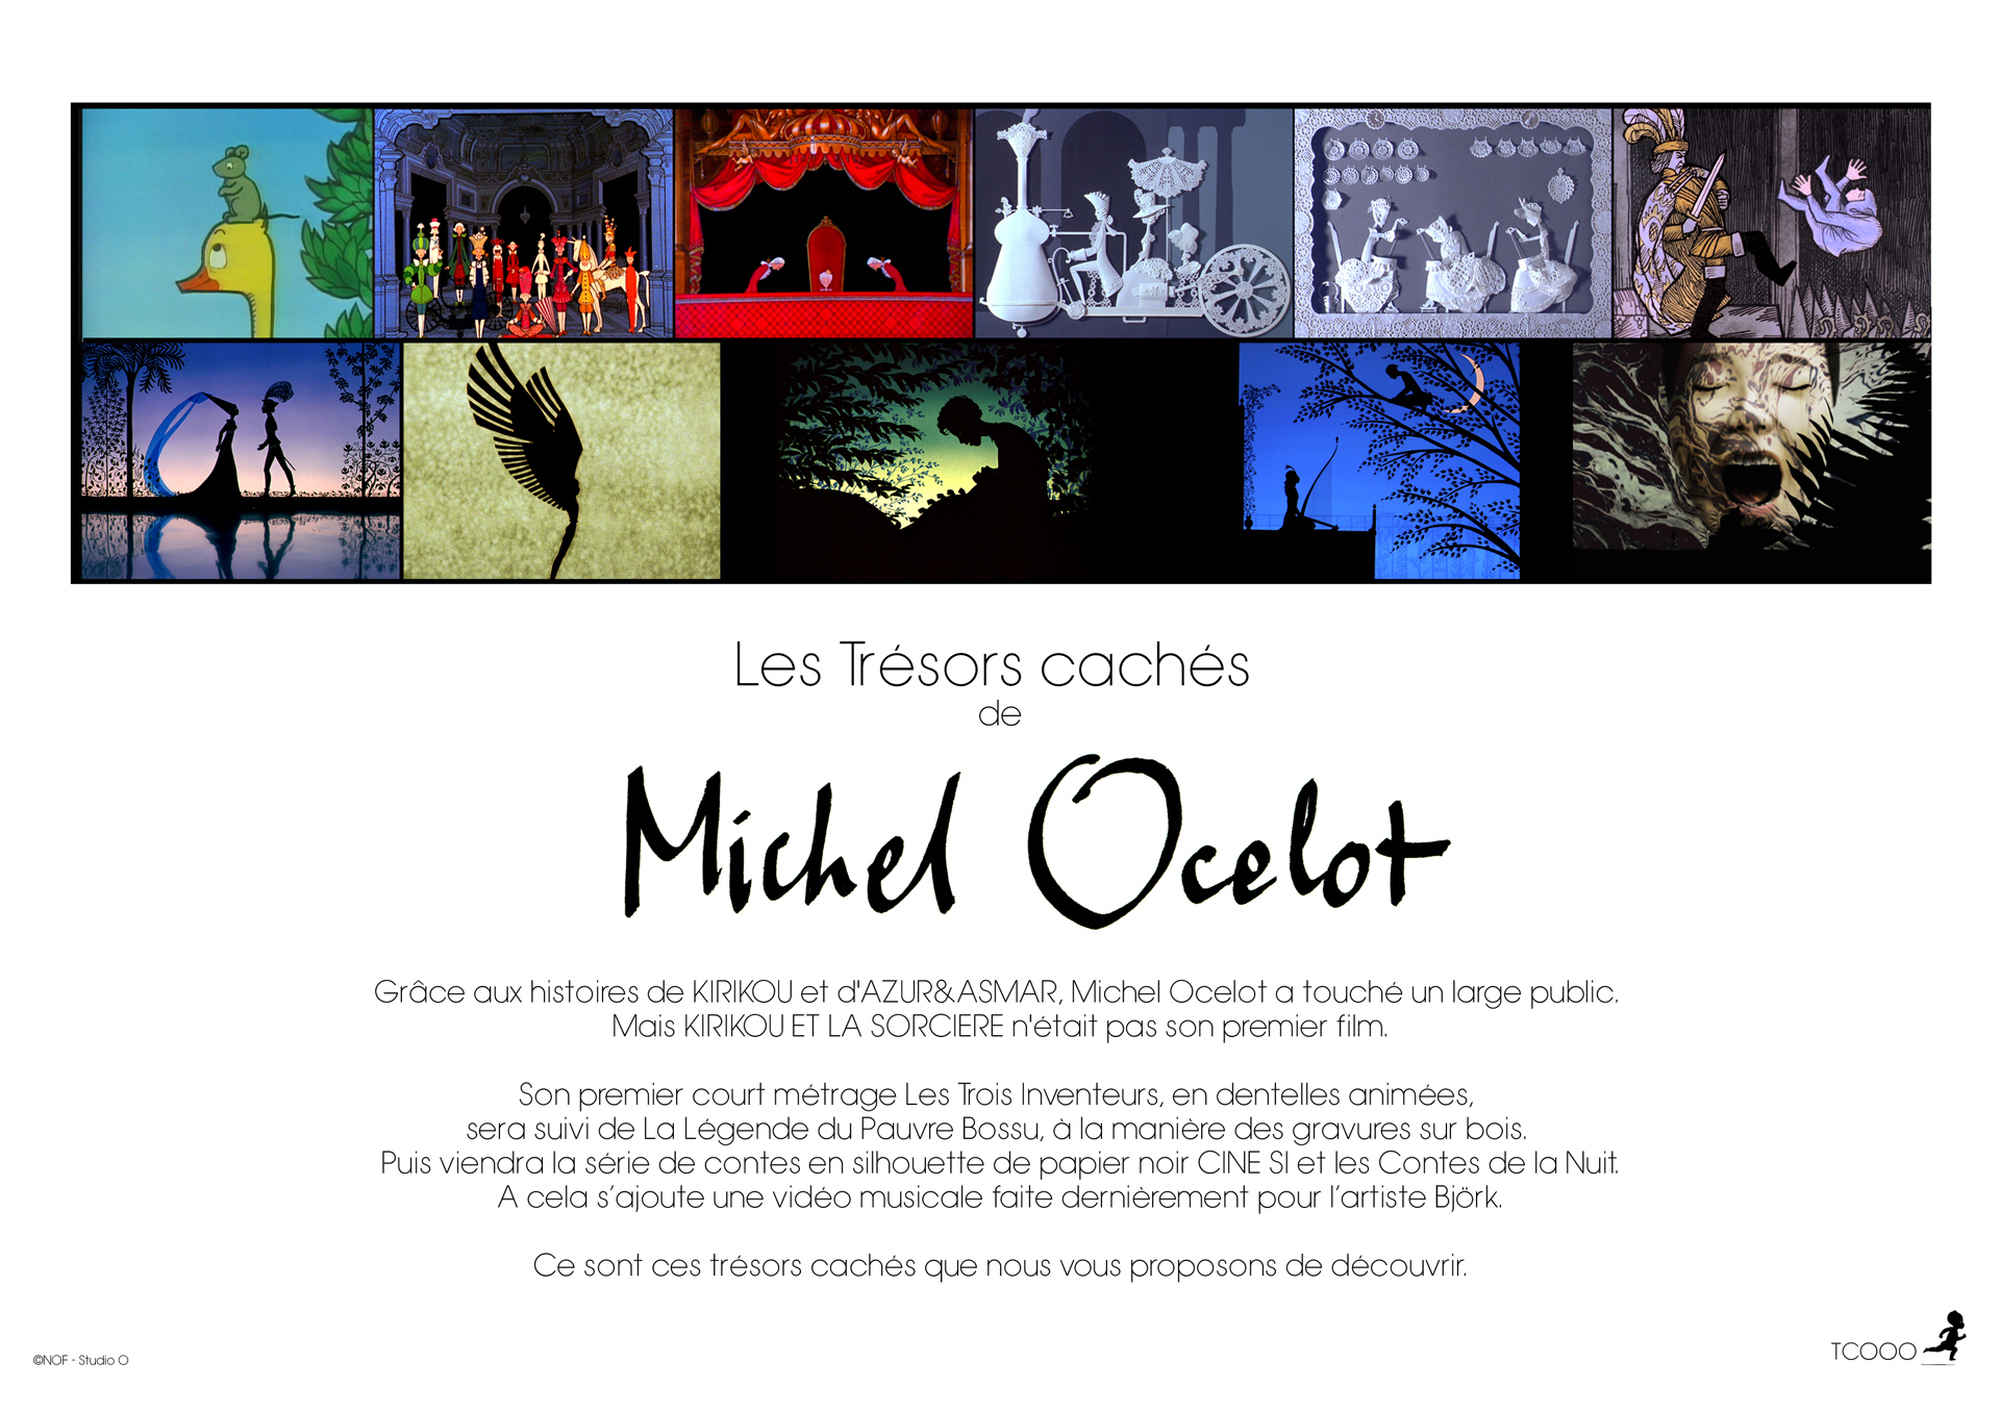 Les Trésors Cachés de Michel Ocelot